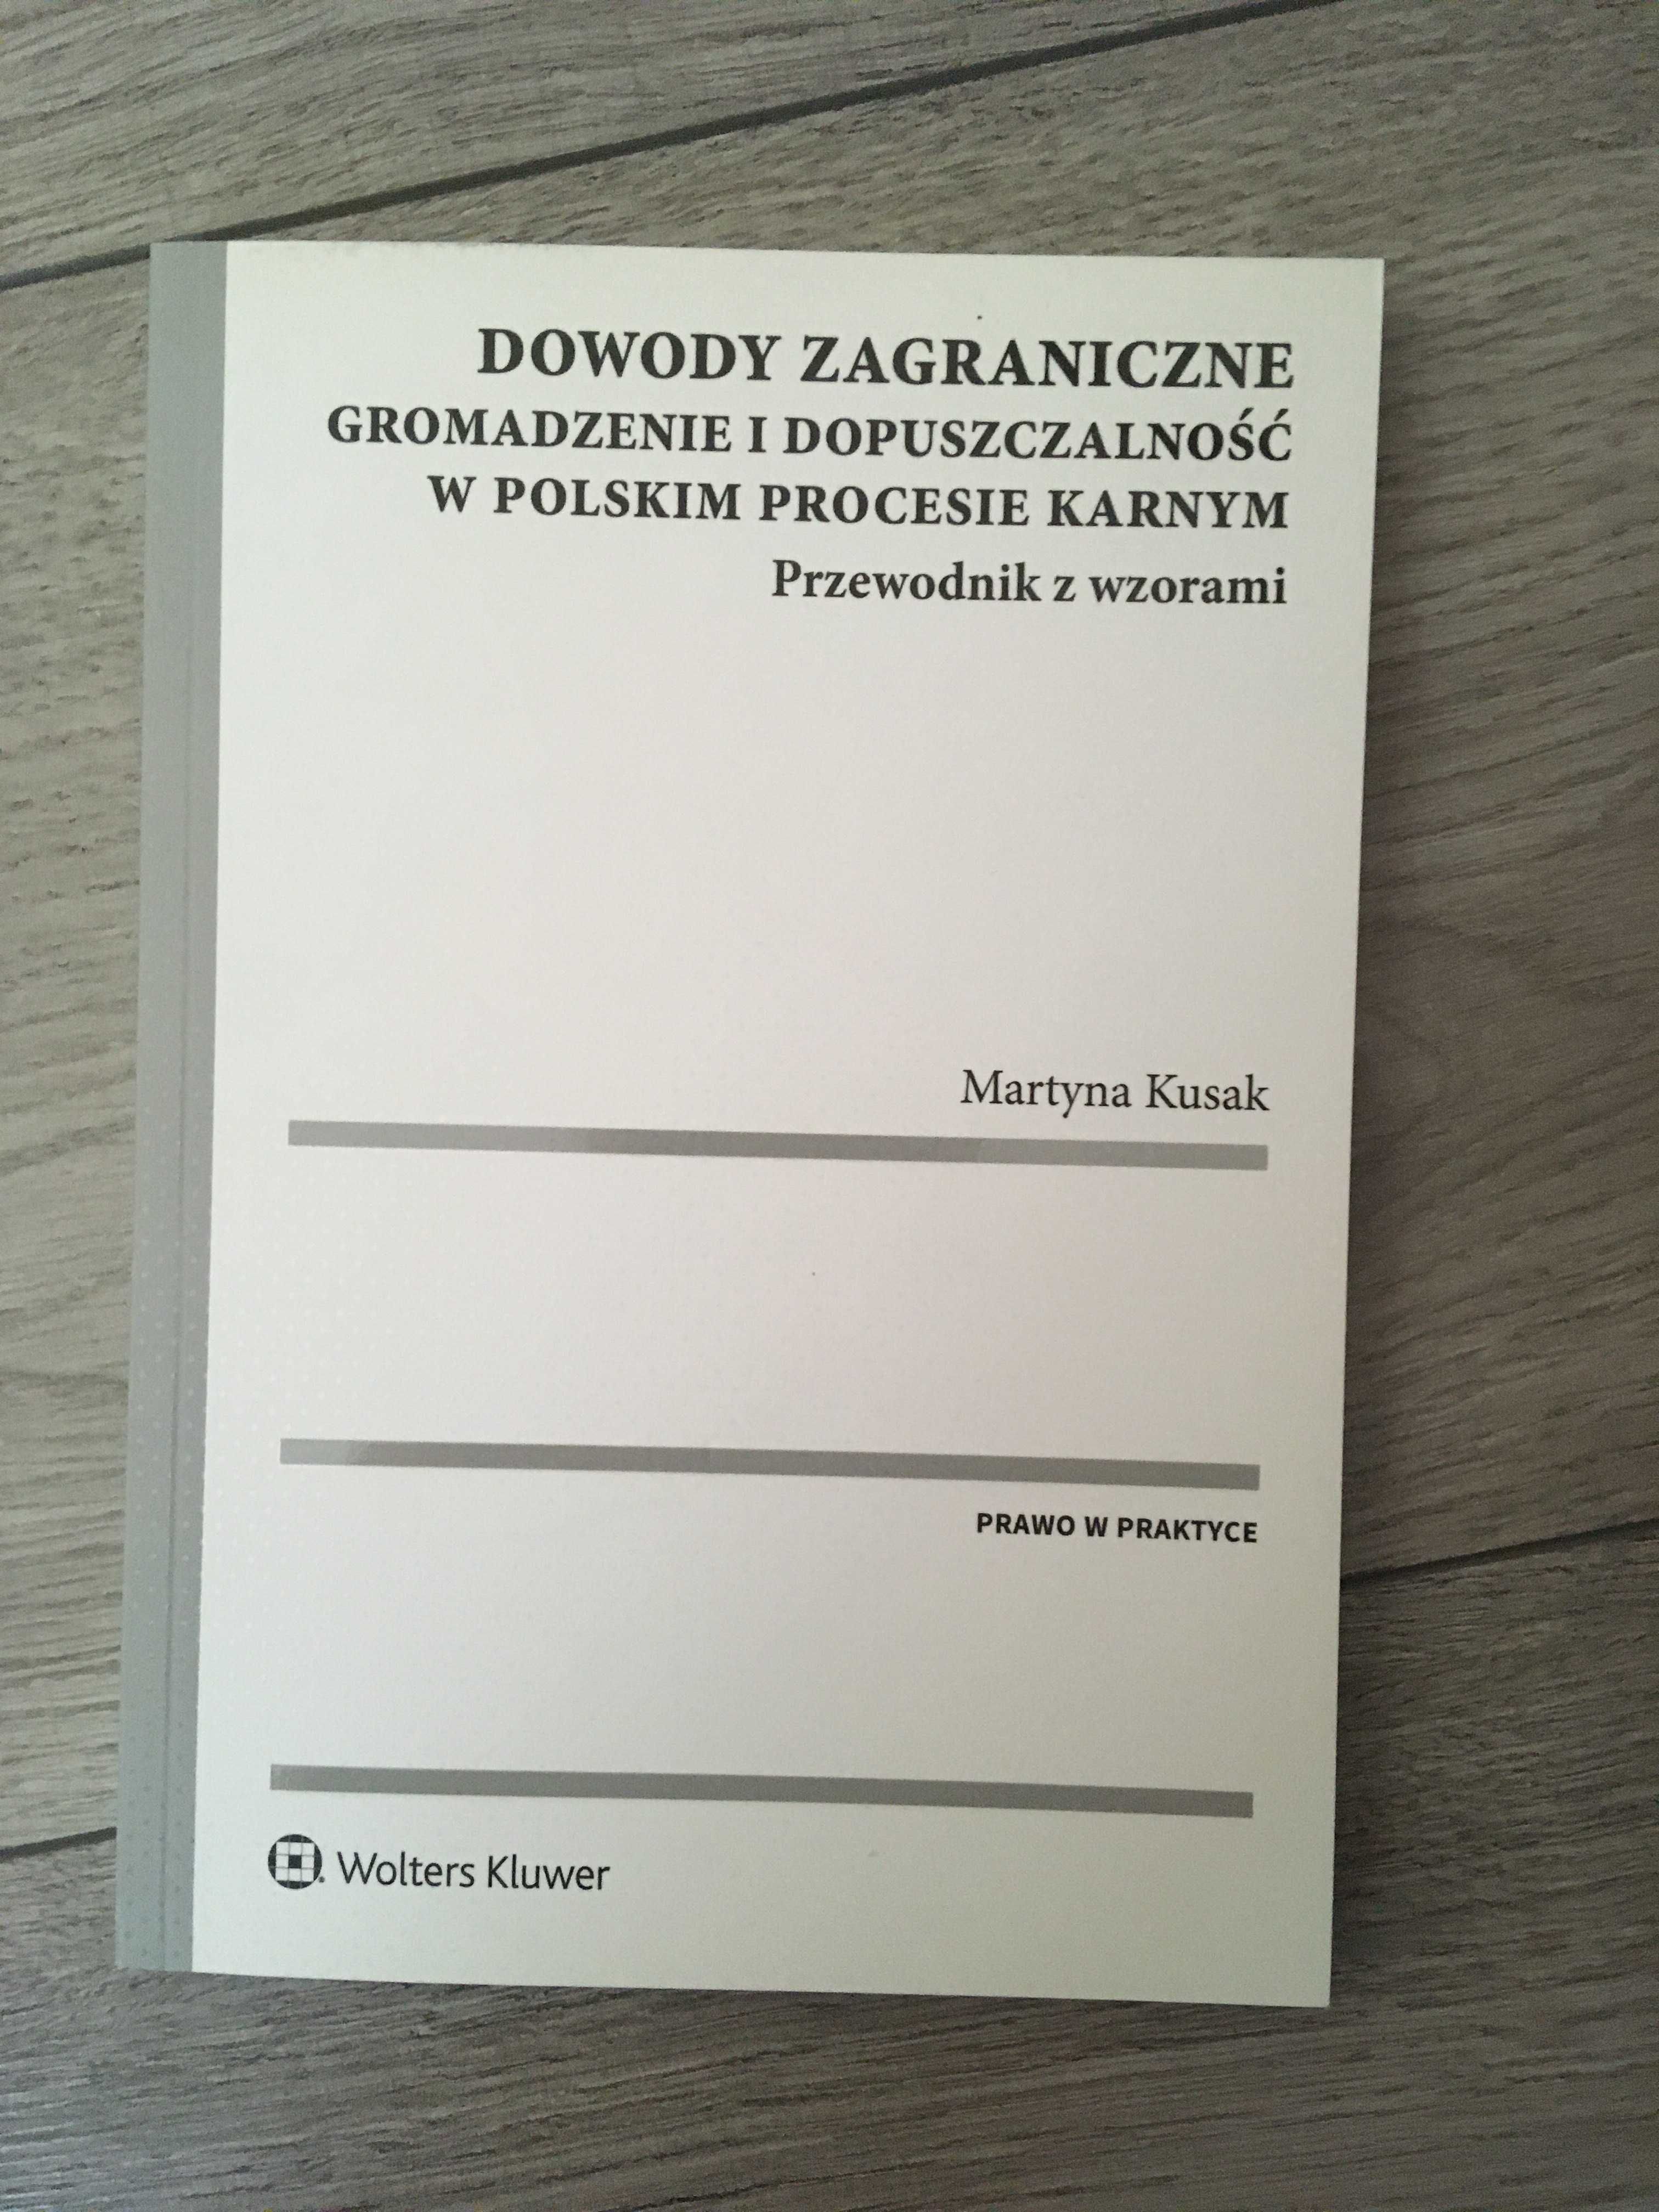 M. Kusak - Dowody zagraniczne (2019)